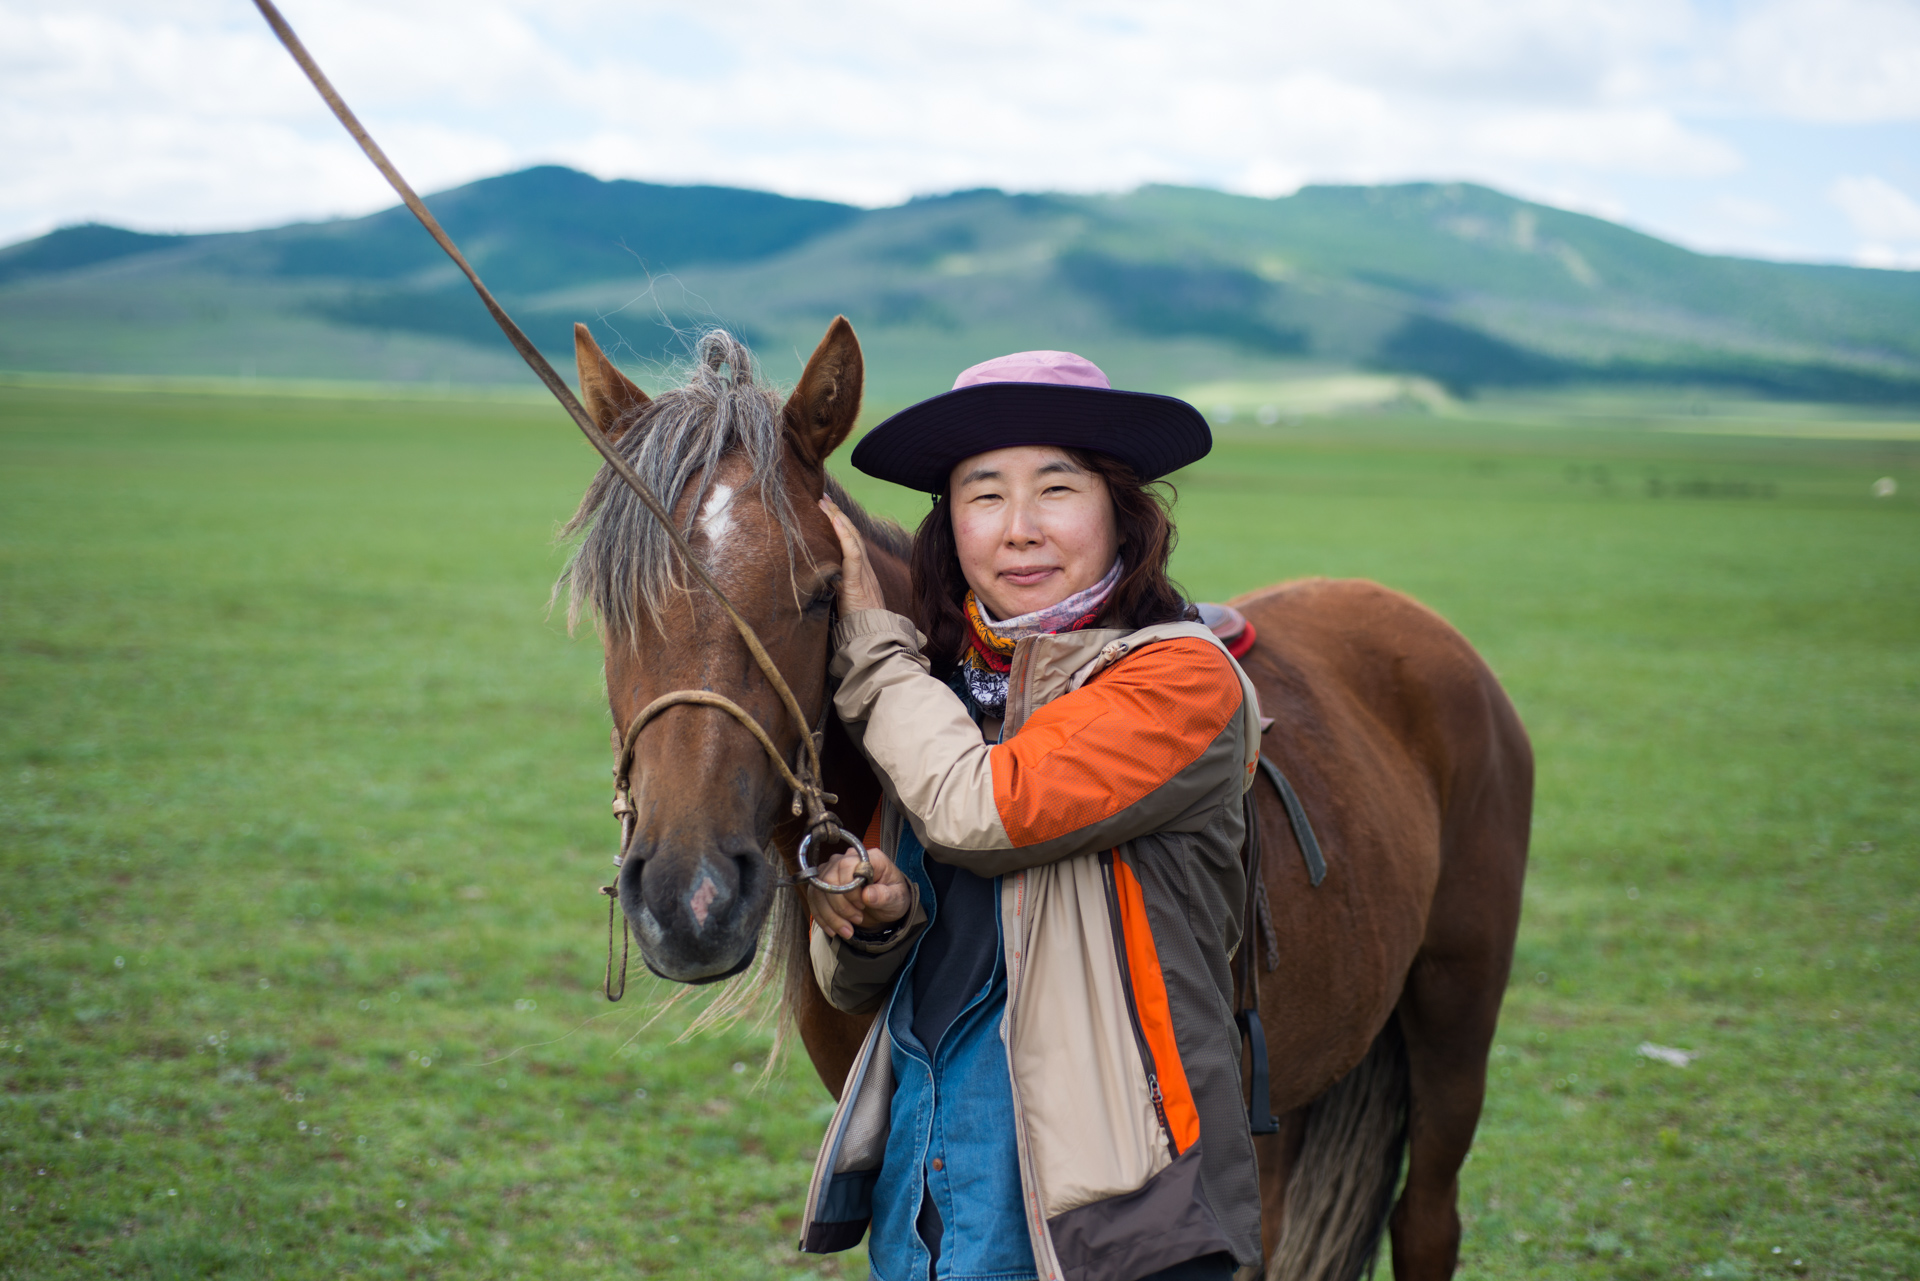 150802_476.jpg : 몽골 학습탐사 2진 사진 8월2일_1 ...자